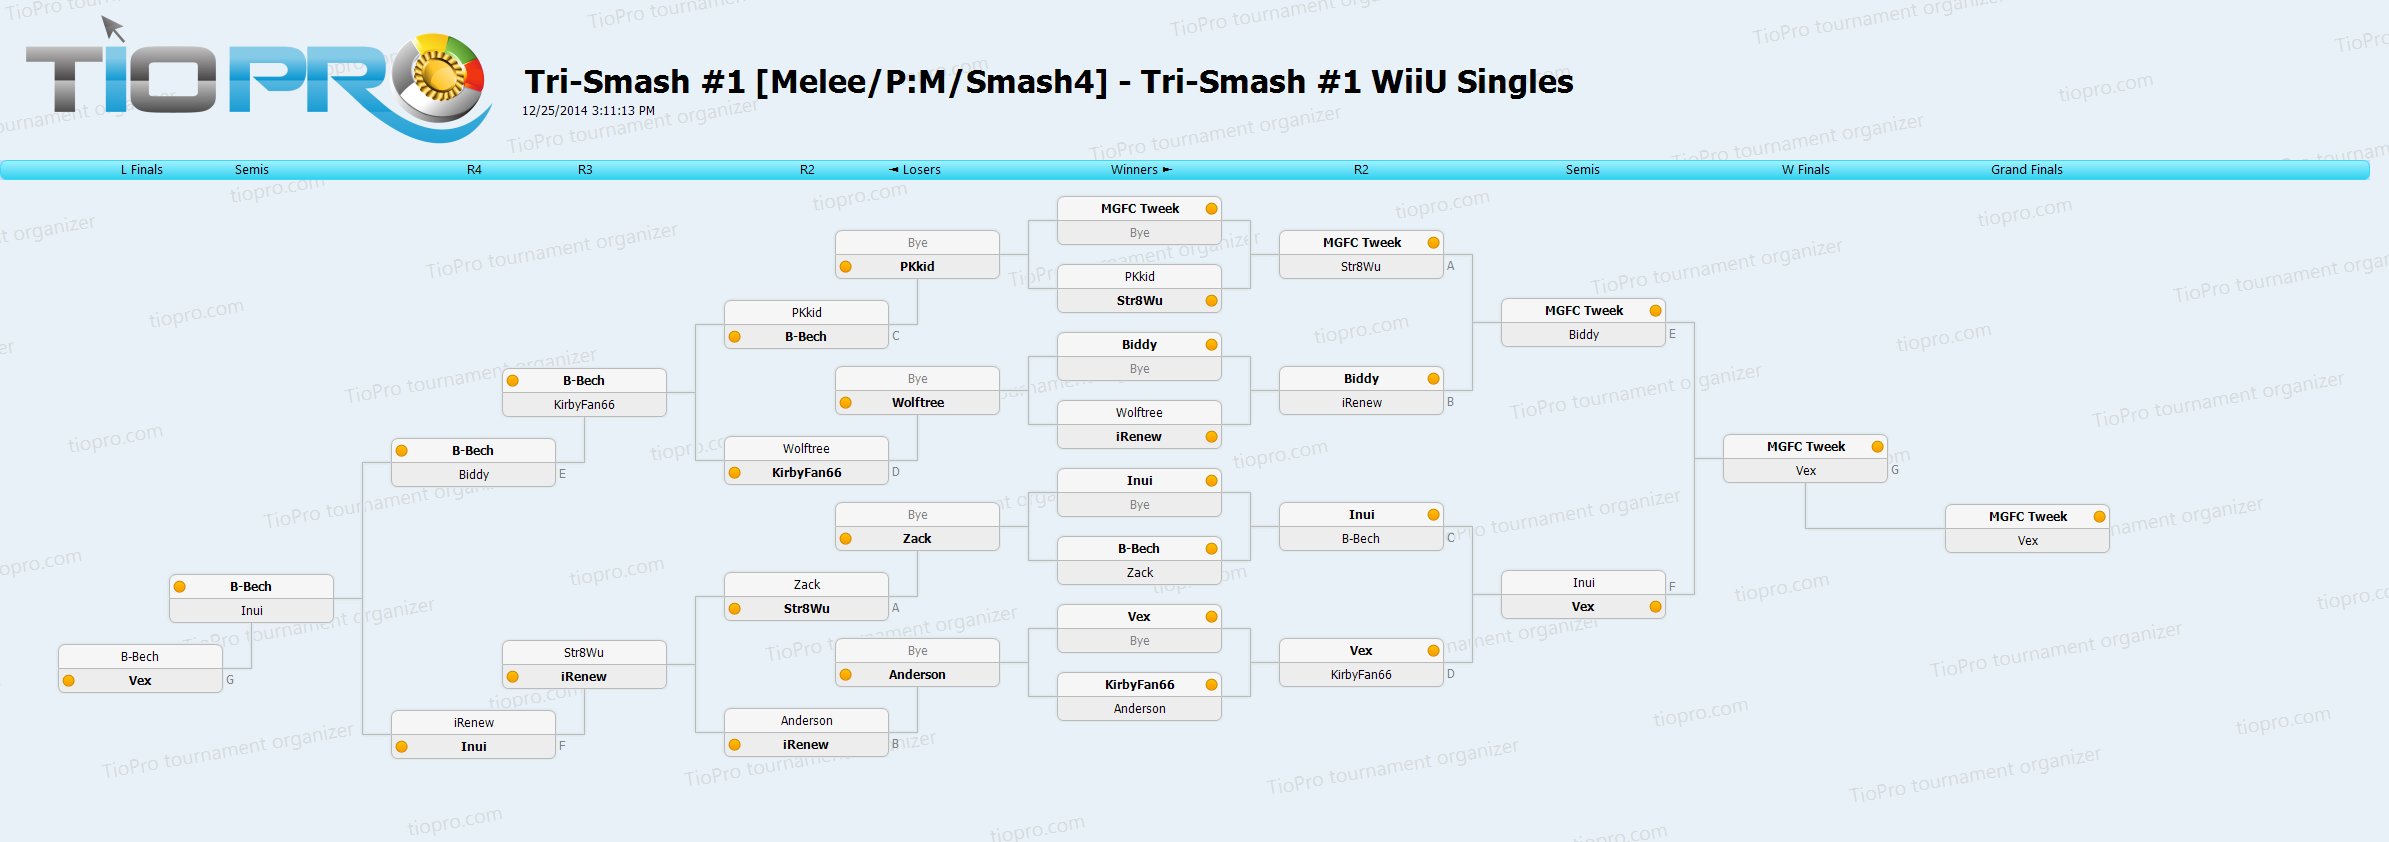 Tri-Smash #1 WiiU Singles